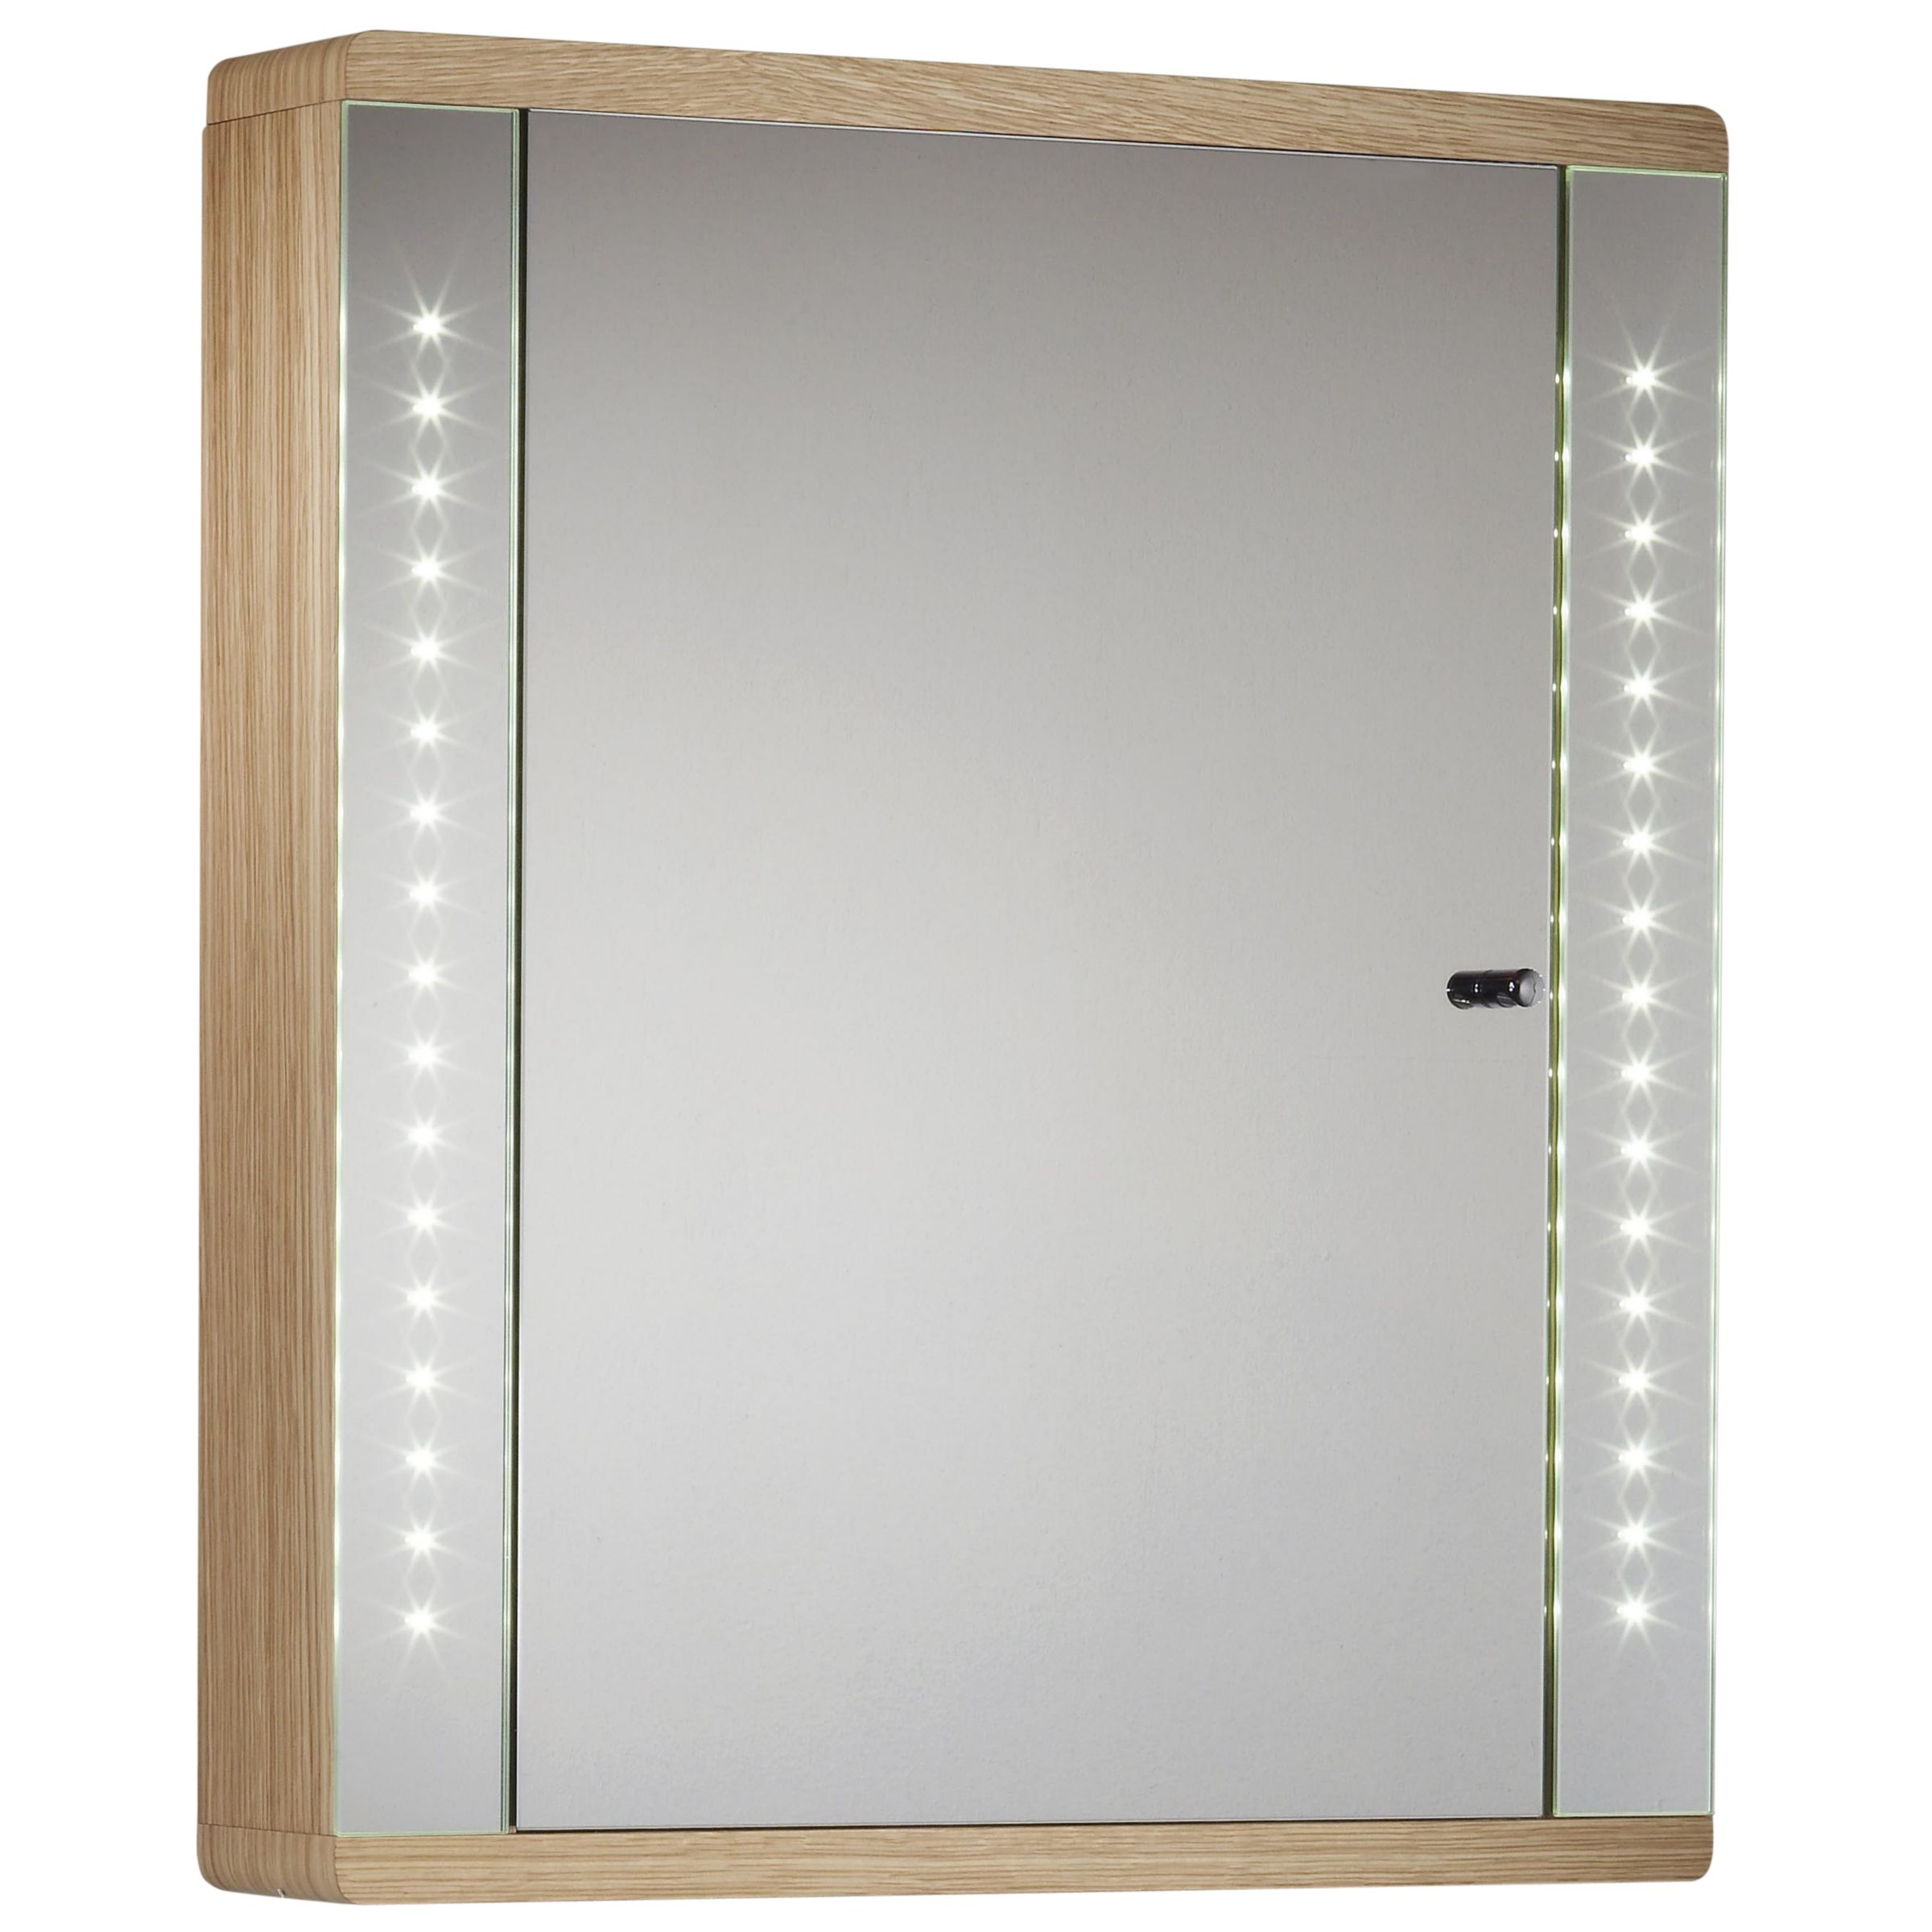 Instinct Integrated LED Bathroom Cabinet, Oak at John Lewis